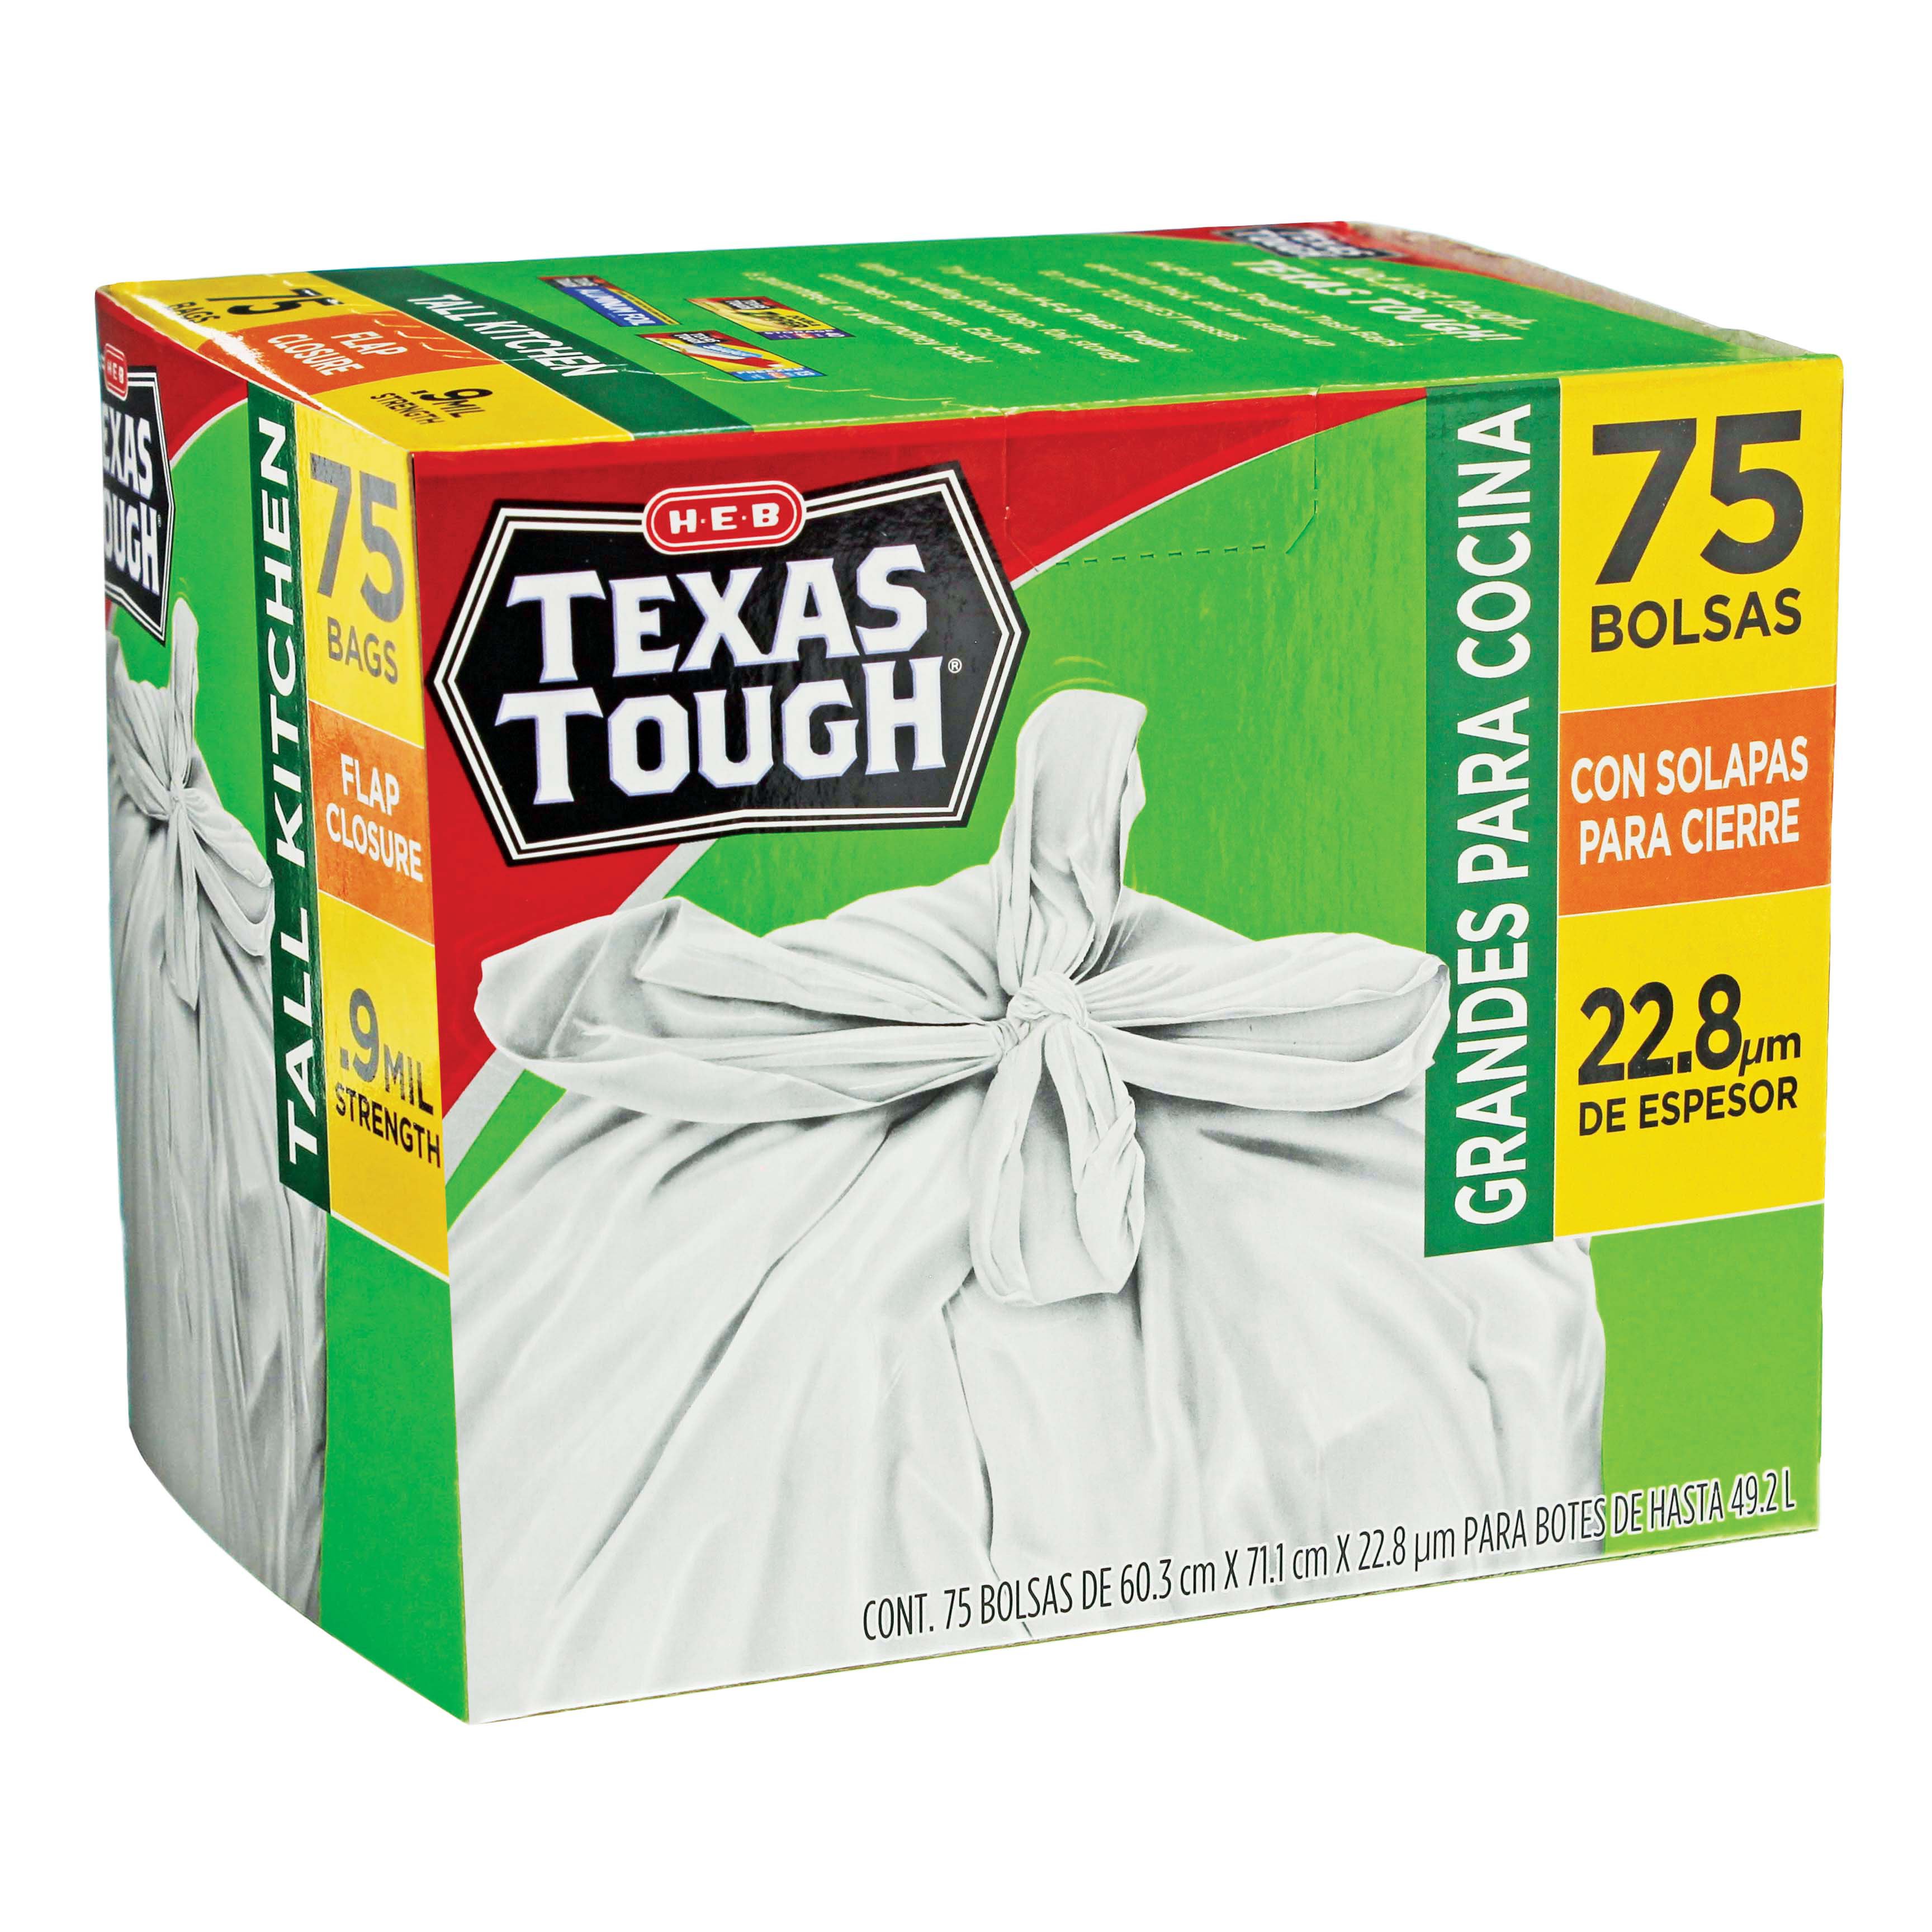 H E B Texas Tough Flap Closure Tall Kitchen 13 Gallon Trash Bags Shop Trash Bags At H E B 